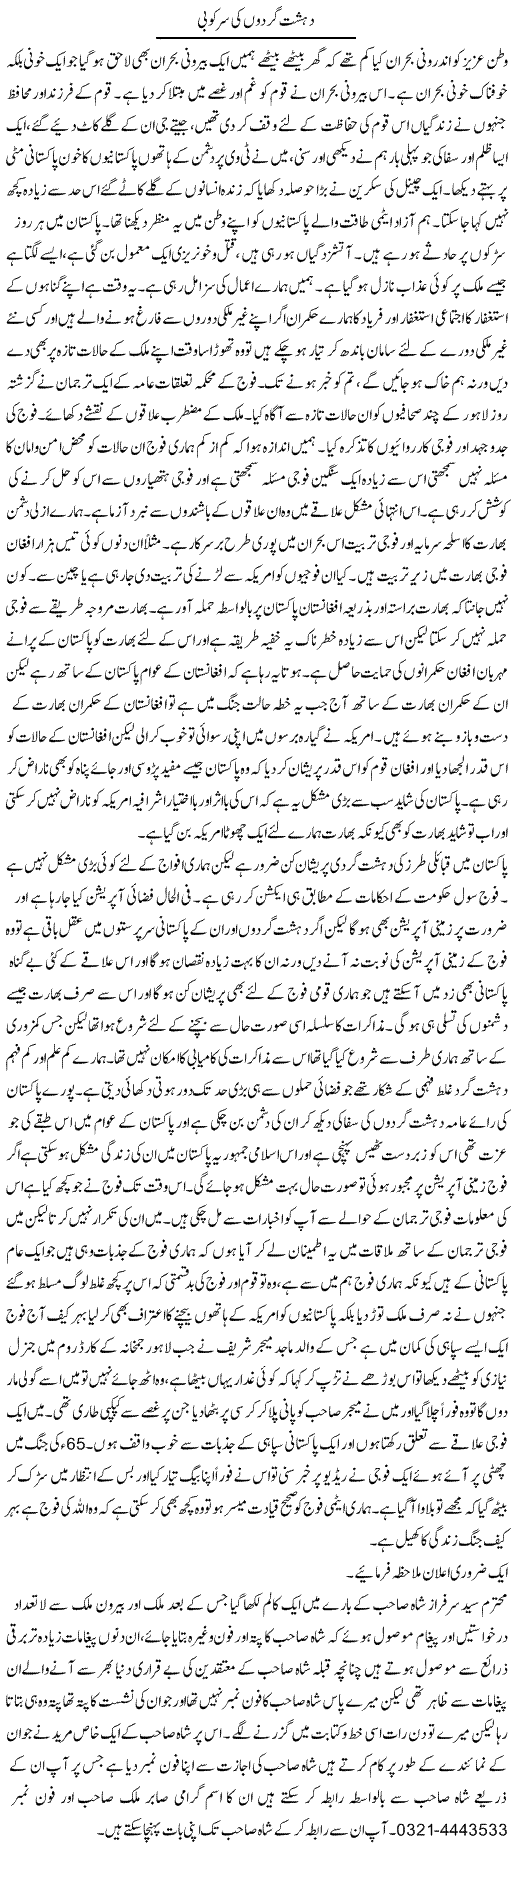 Dehshatgardon Ki Sarkobi | Abdul Qadir Hassan | Daily Urdu Columns